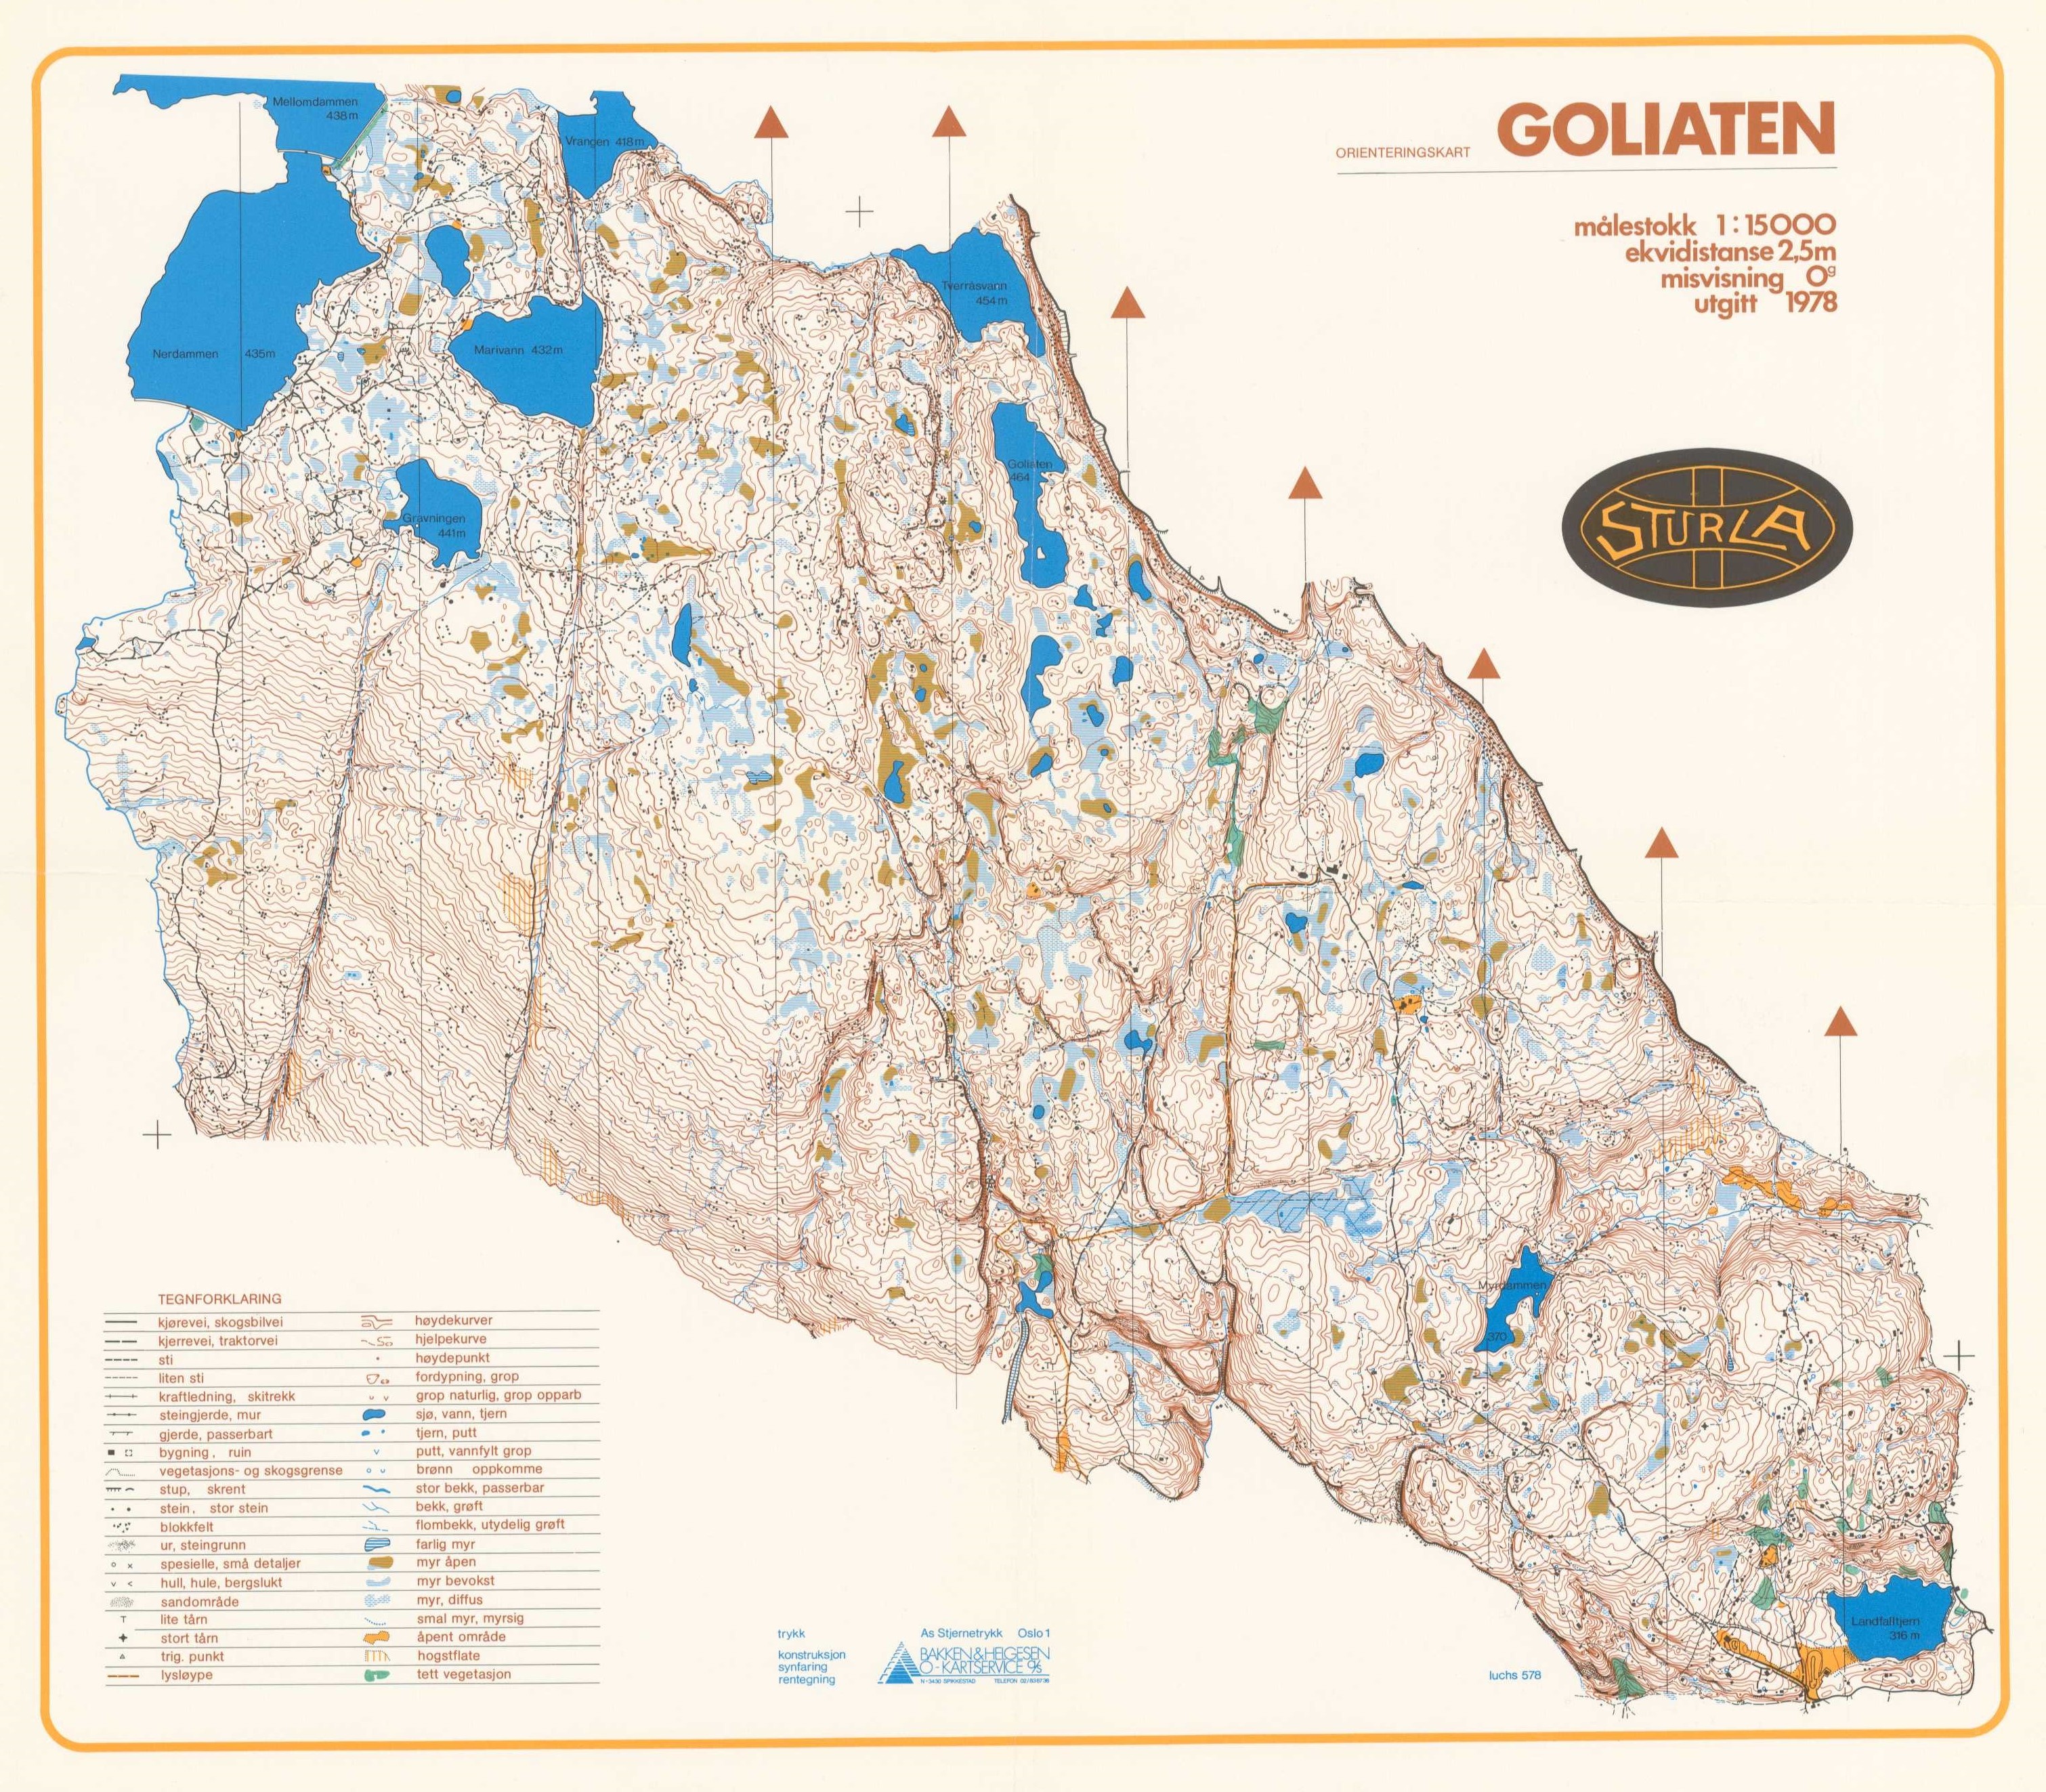 Goliaten (01-05-1978)